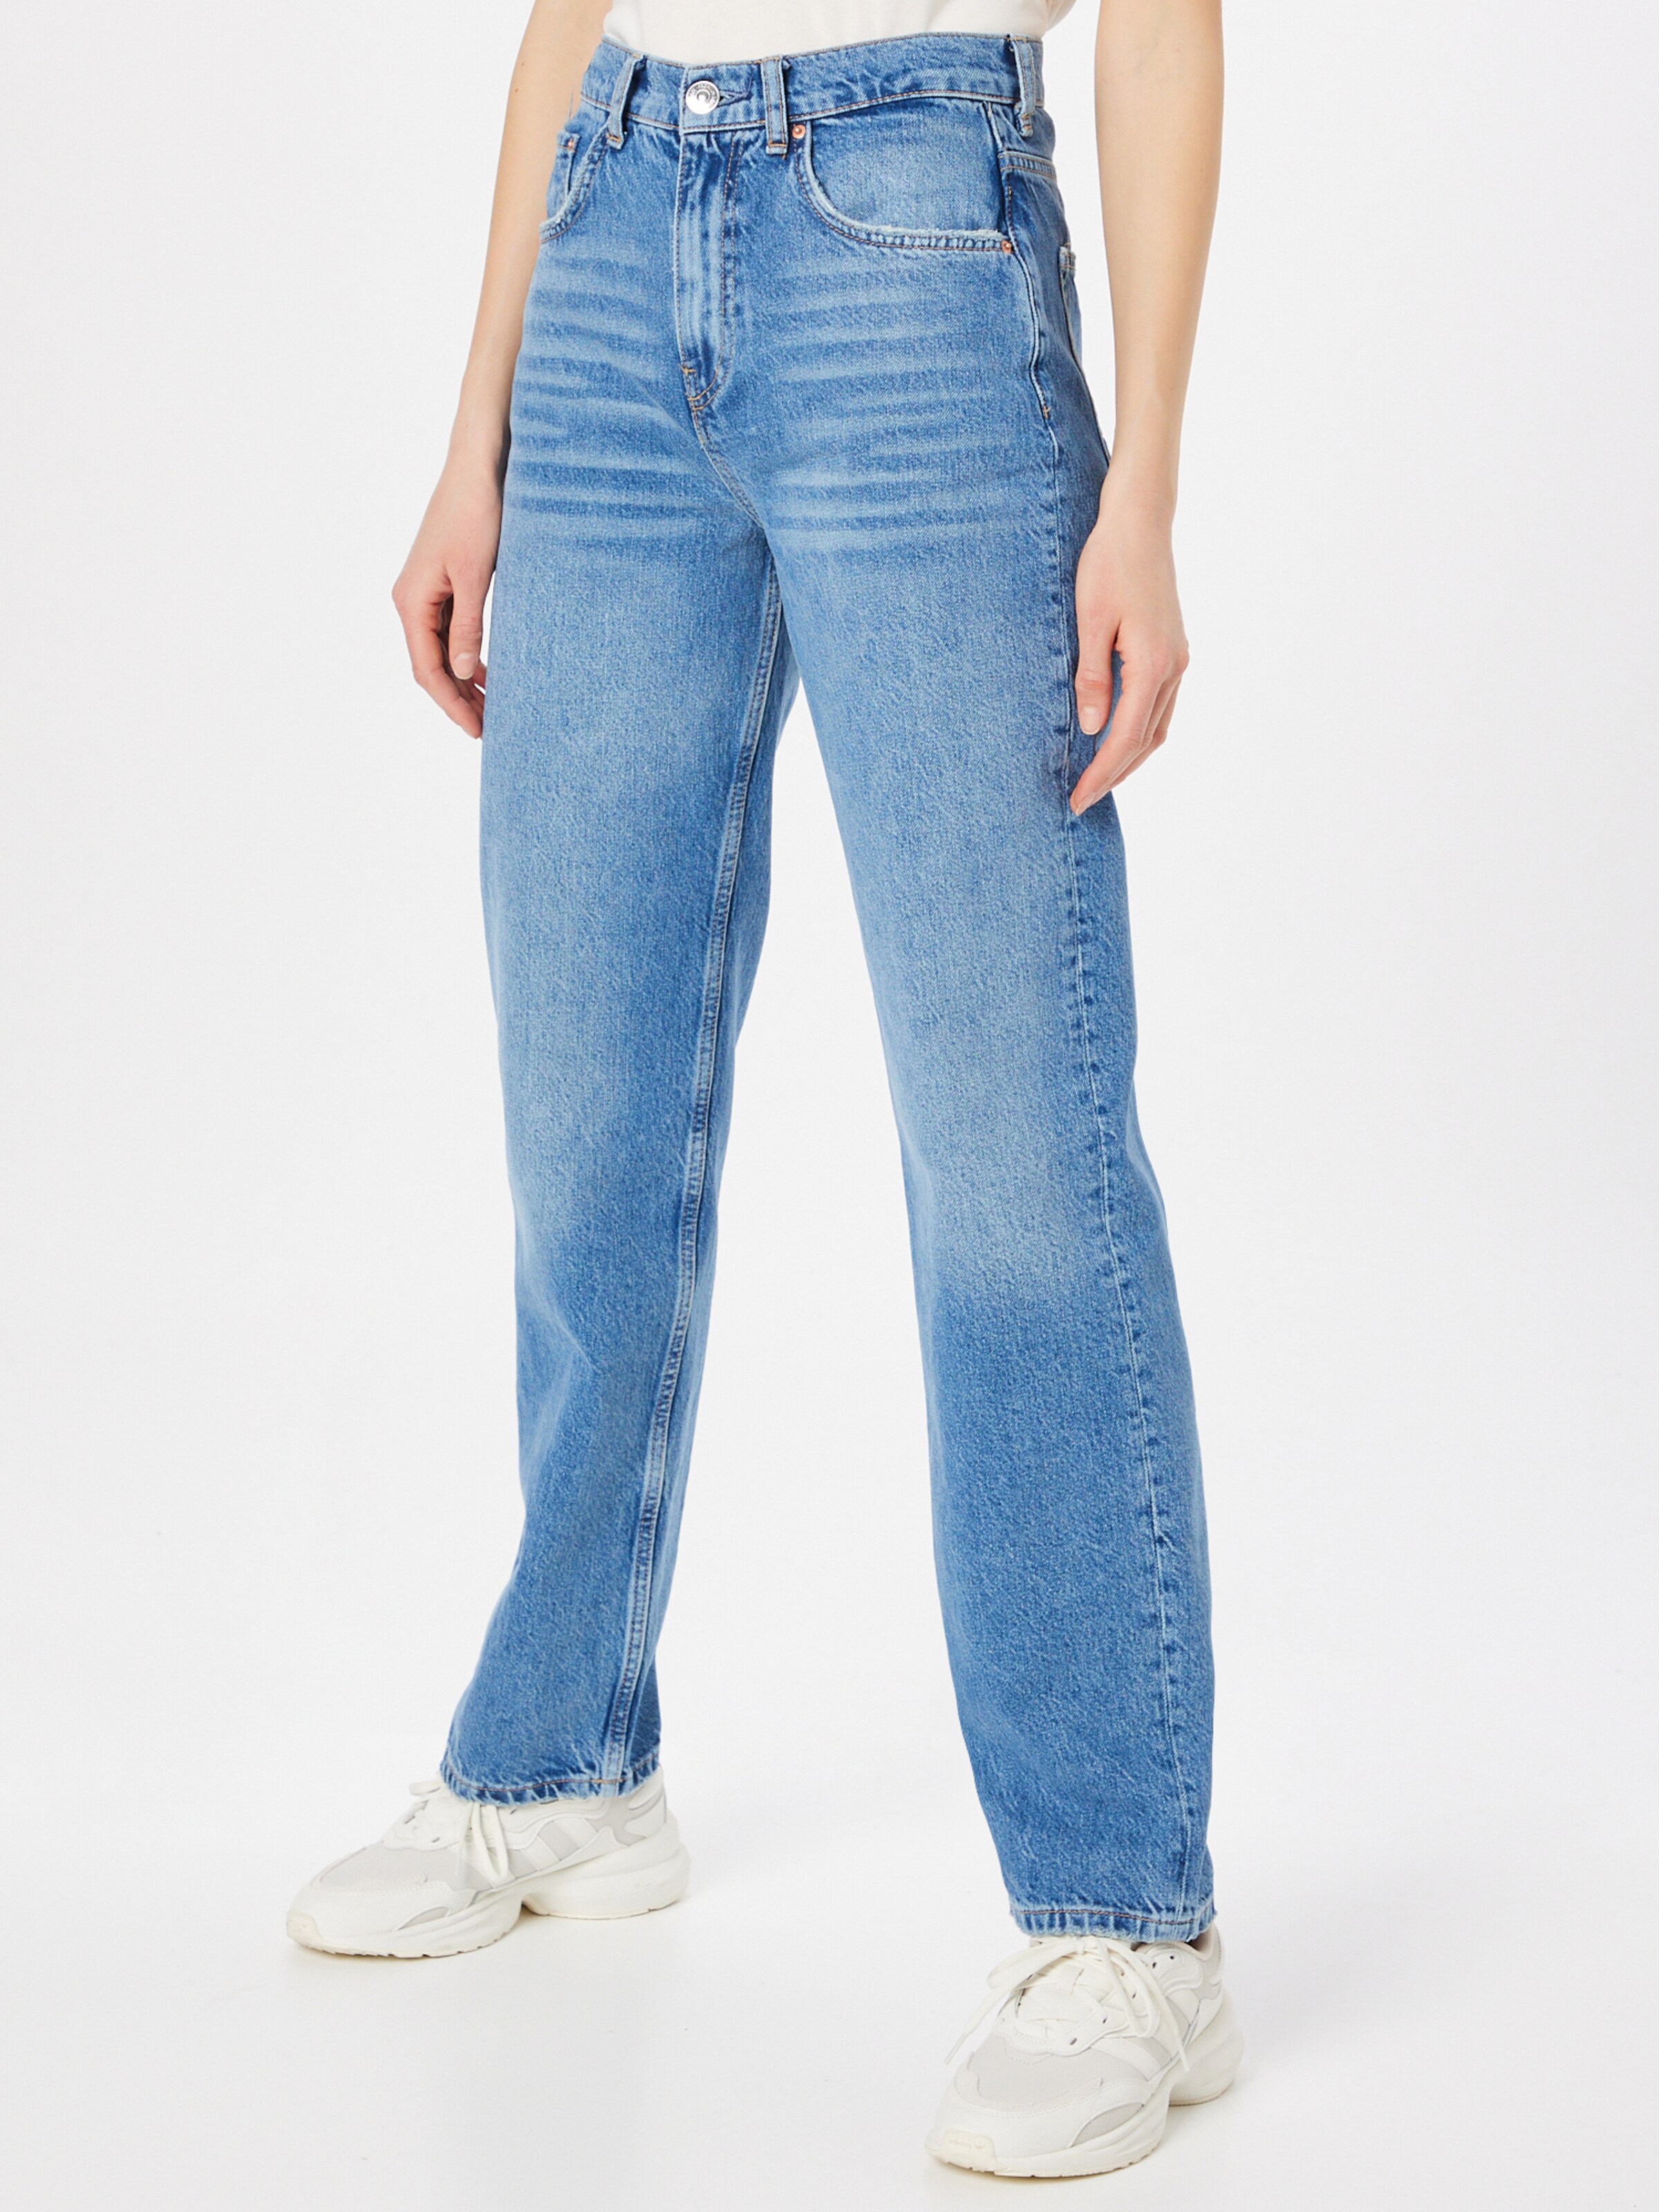 Frauen Große Größen Gina Tricot Jeans in Blau - UF80195